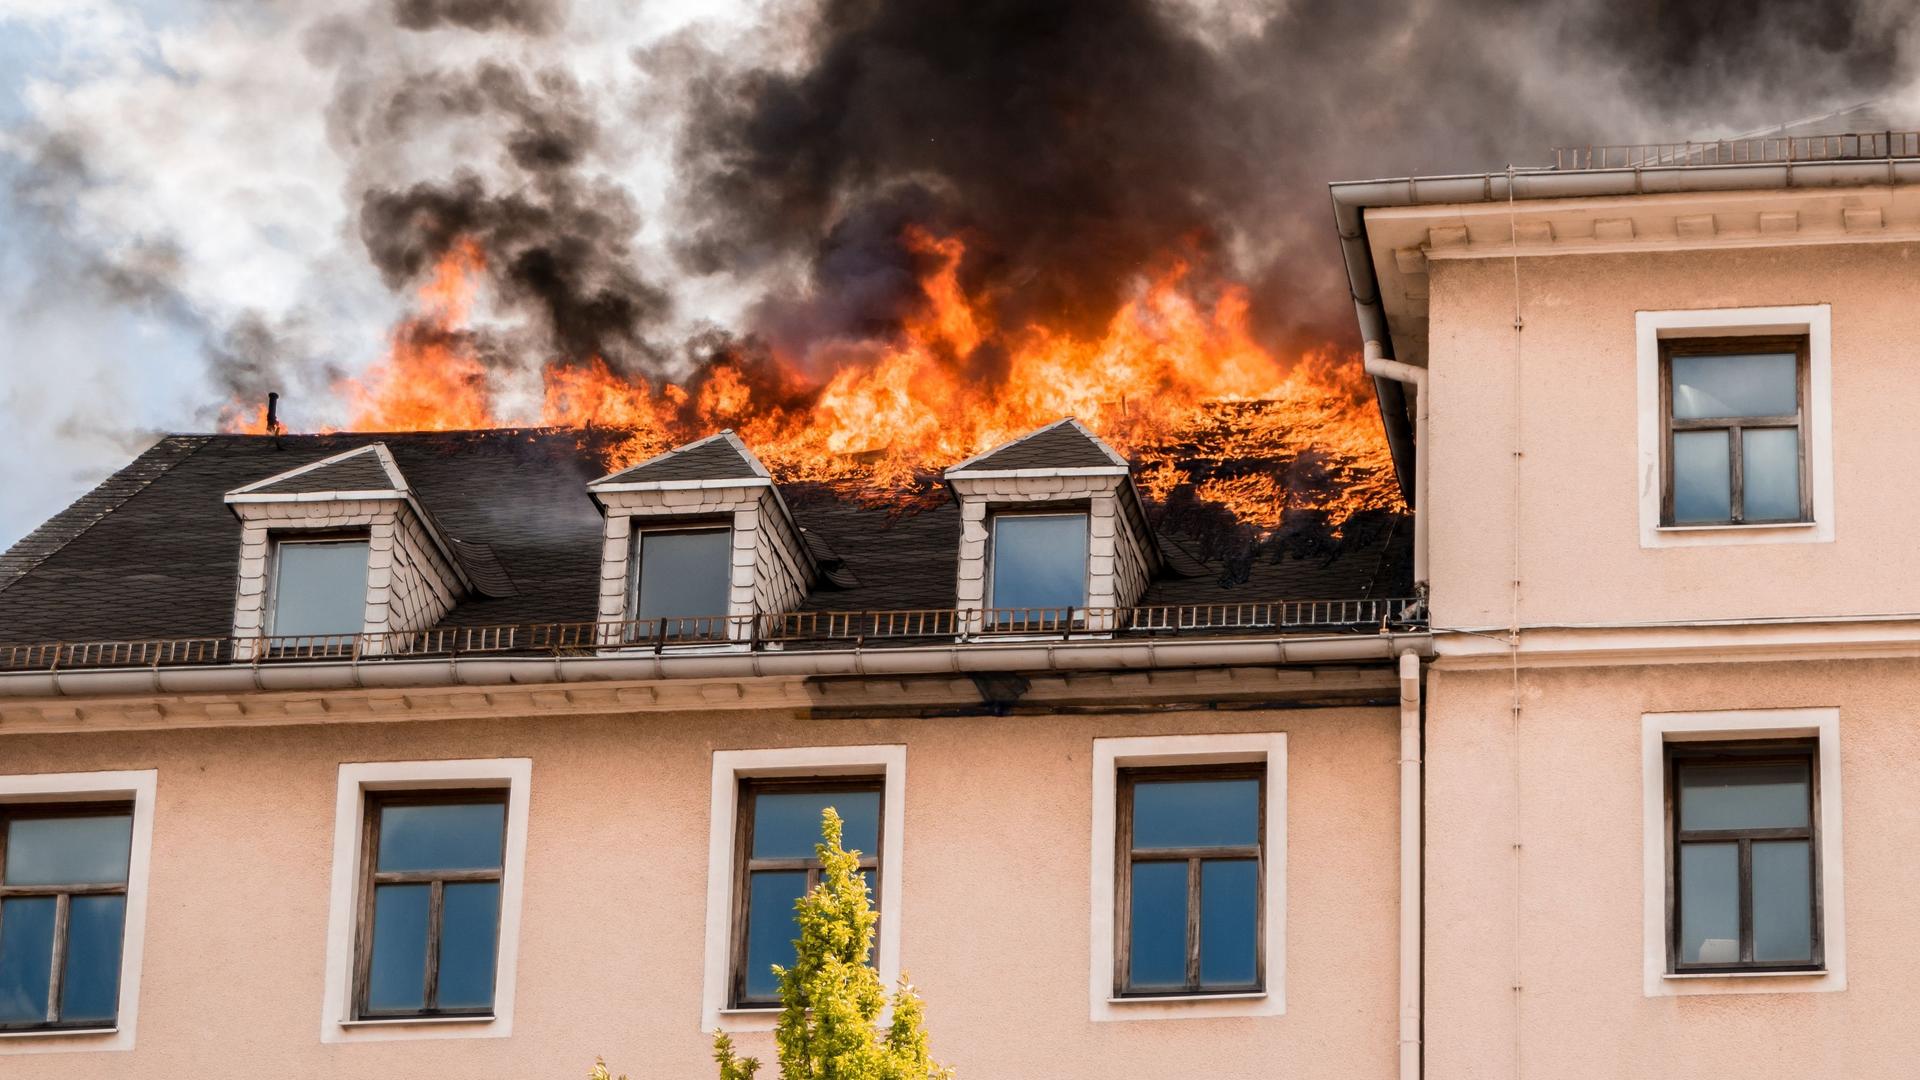 Dachstuhl von lachsfarbenem Haus steht in Flammen. Rauch steigt auf.